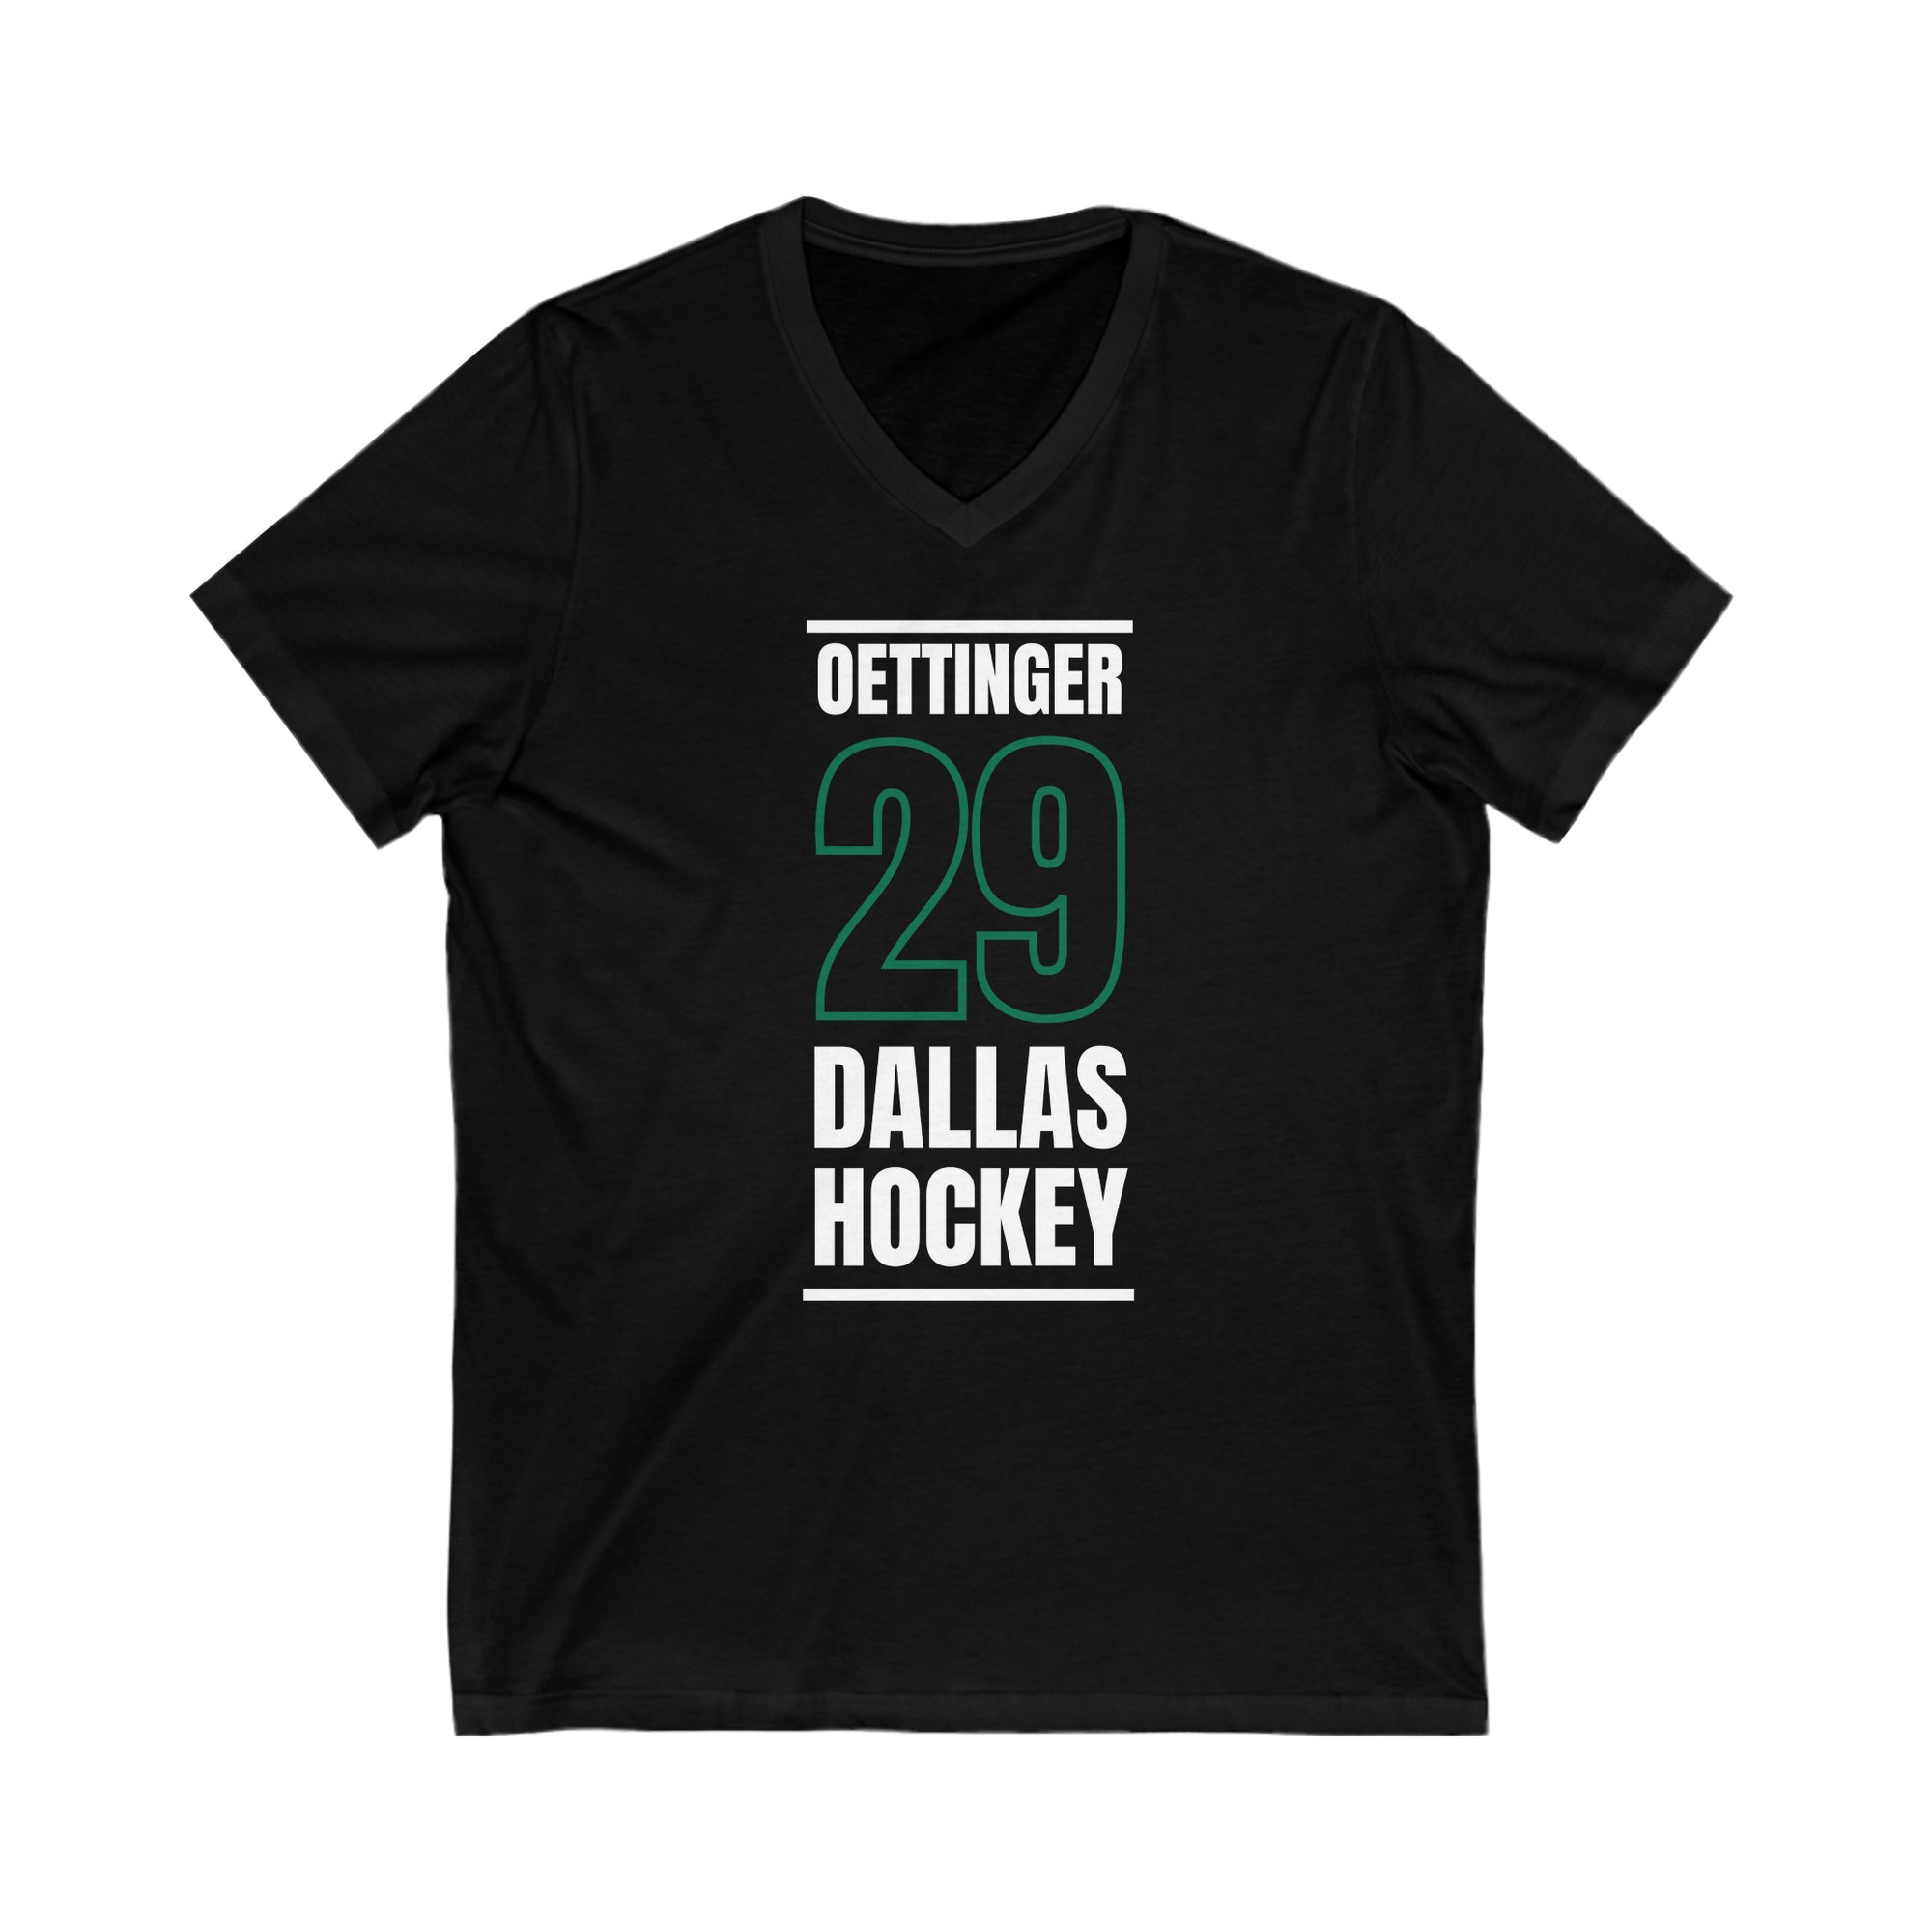 Oettinger 29 Dallas Hockey Black Vertical Design Unisex V-Neck Tee